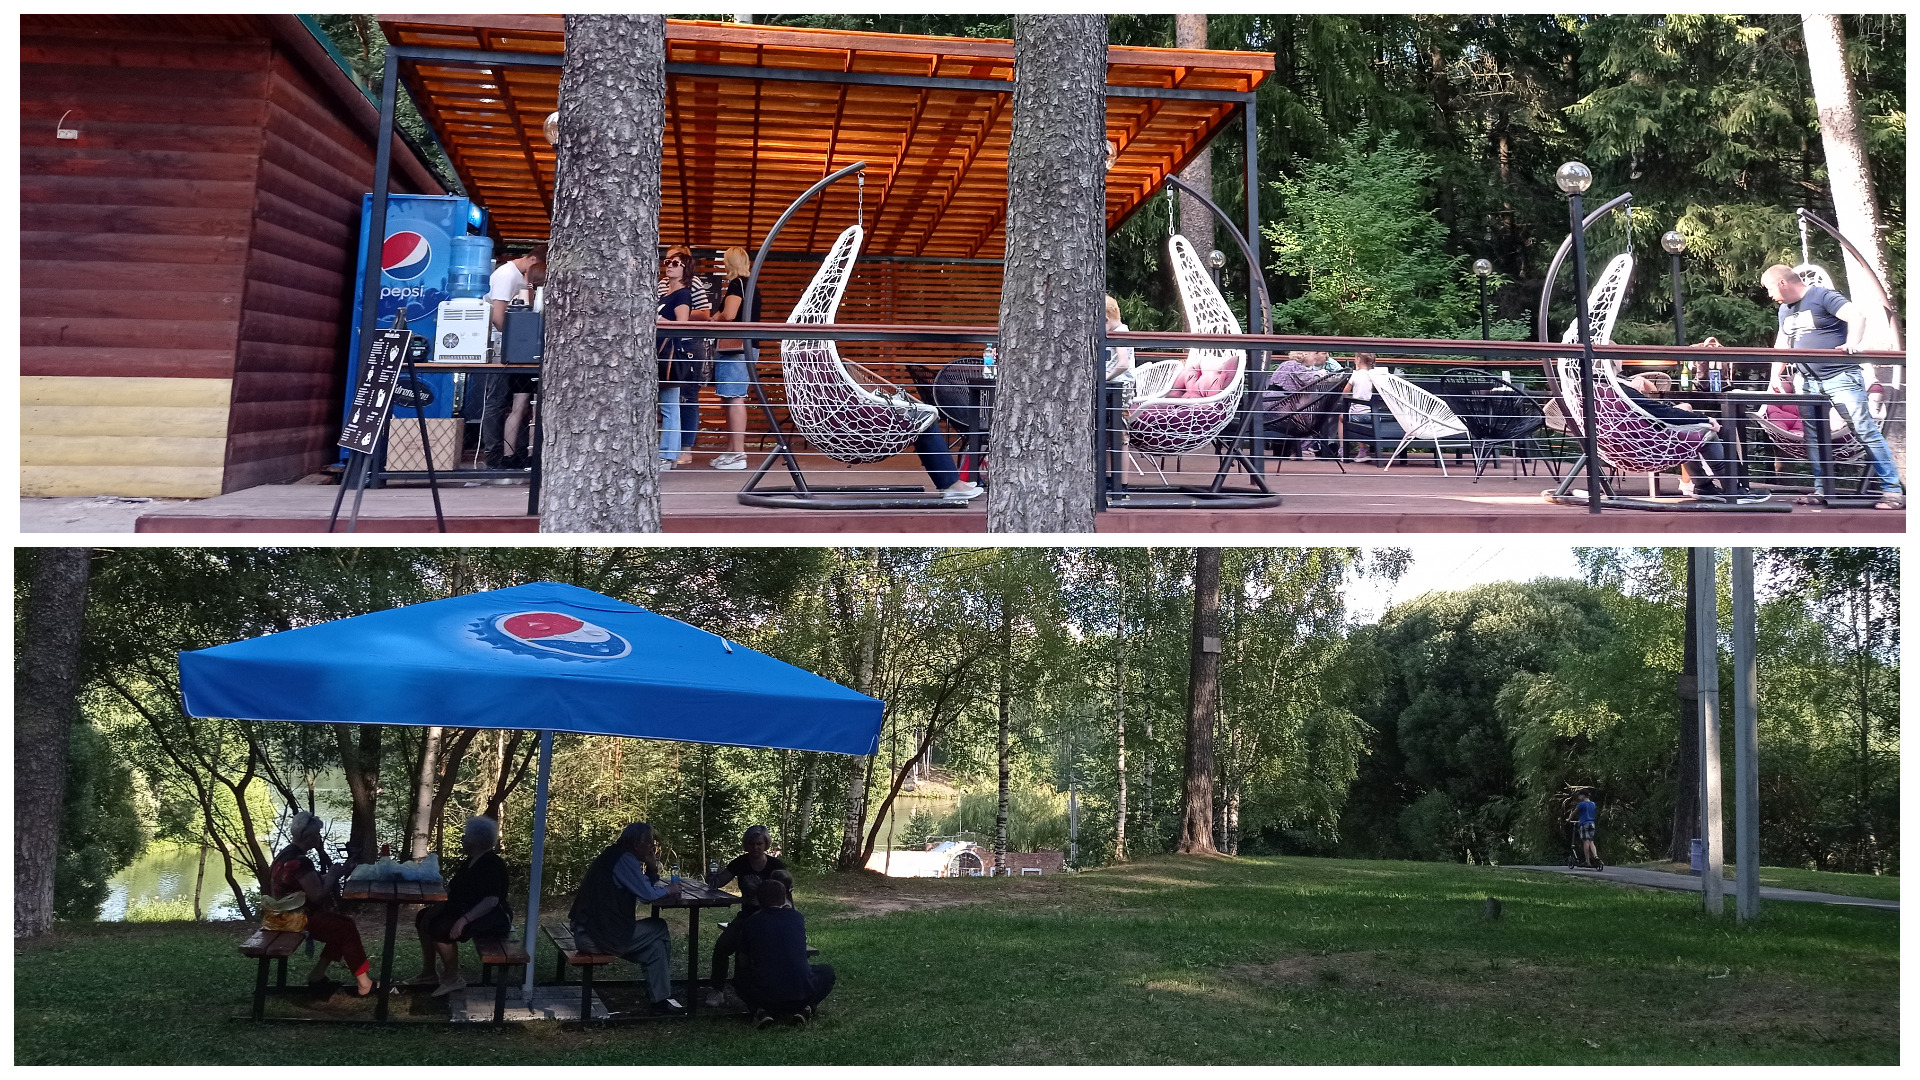 Территория отдыха в парке Харинка, где расположено кафе для посетителей.